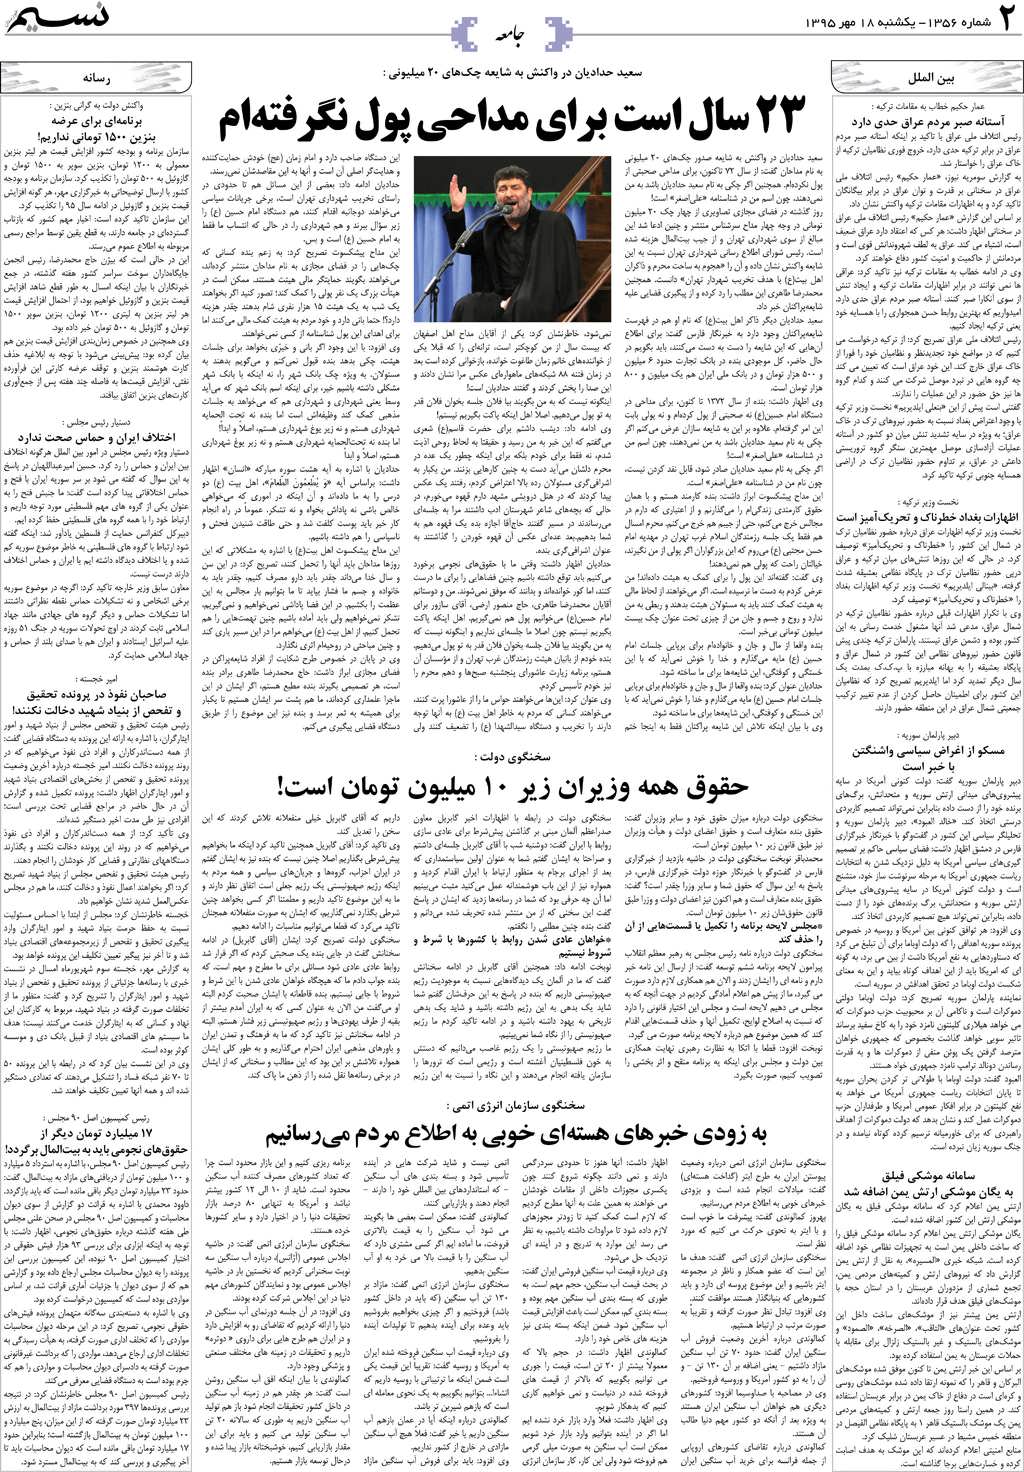 صفحه جامعه روزنامه نسیم شماره 1356